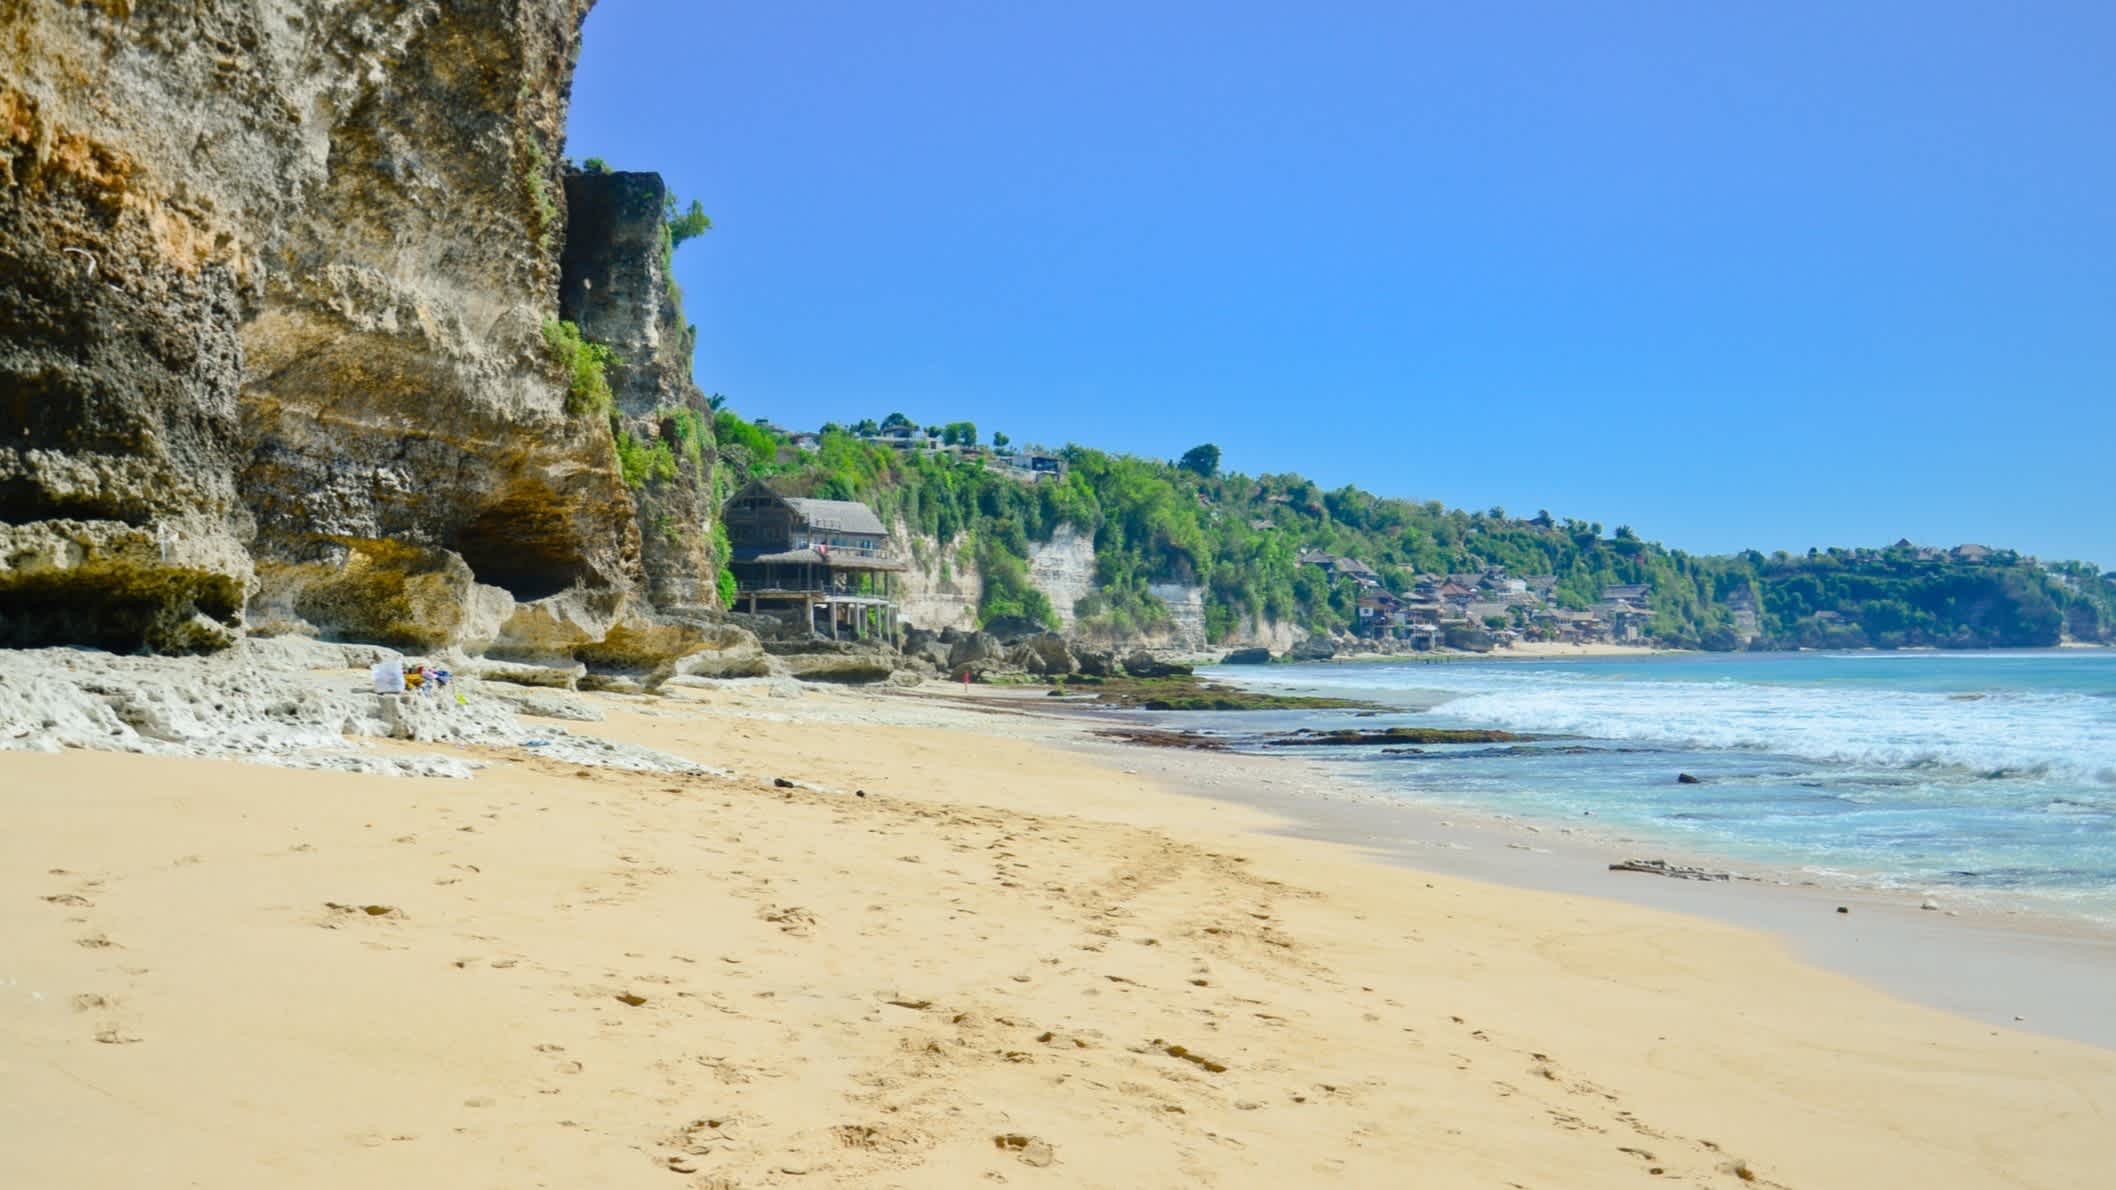 Aufnahme der Klippen des Dreamland Beaches auf Bali, Indonesien bei sonnigem Wetter und mit Blick auf das Meer.